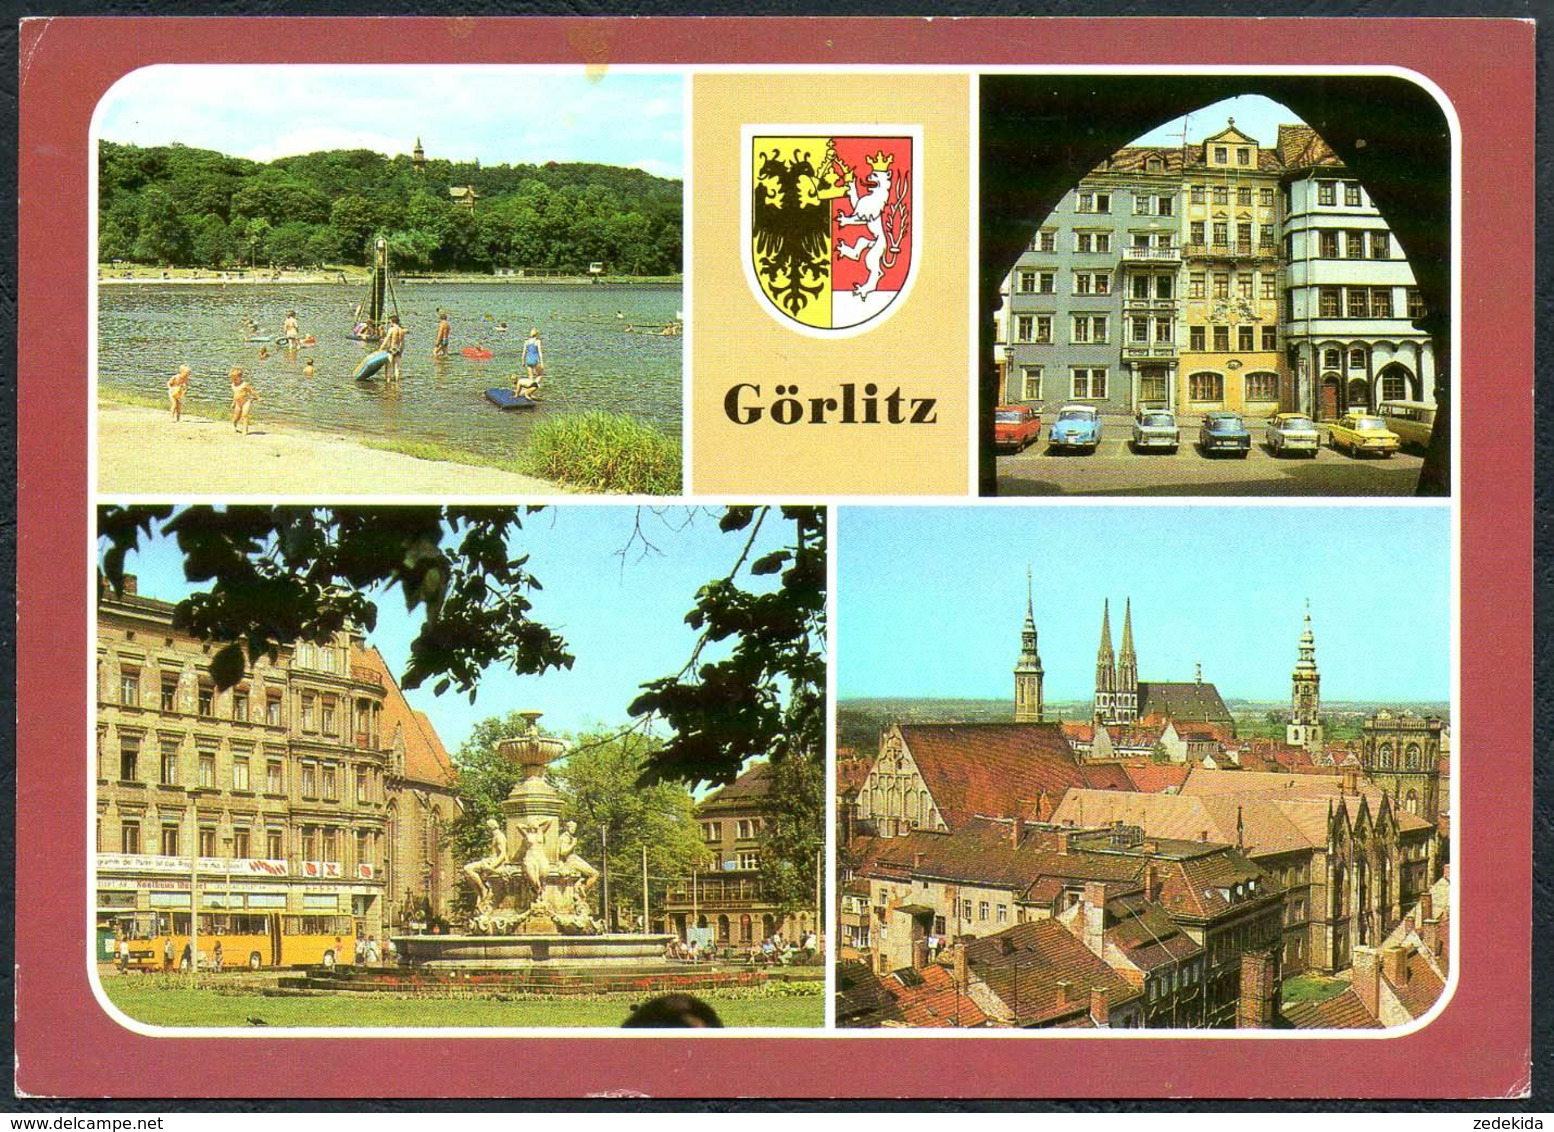 E0273 - Görlitz Ikarus Bus Onibus - Bild Und Heimat Reichenbach - Goerlitz